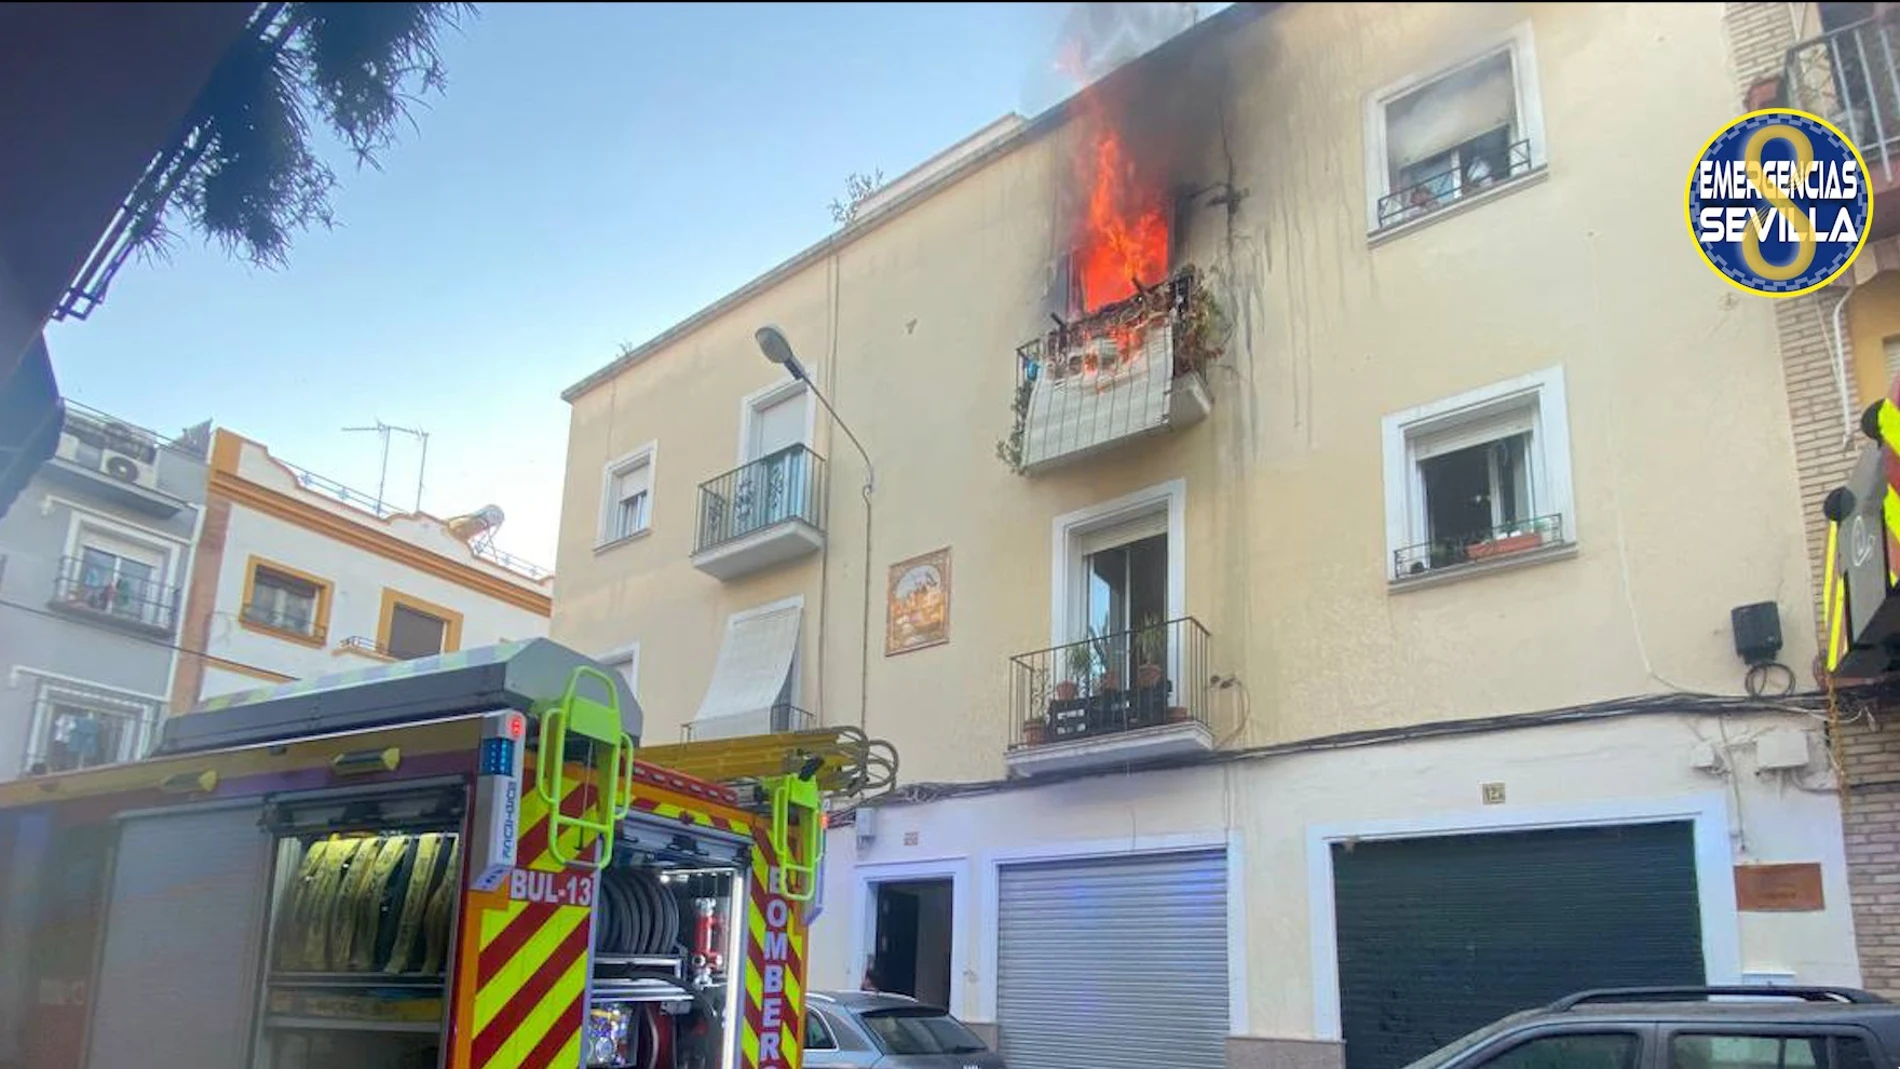 El fuego sale por el balcón de la vivienda, ubicada en el barrio de Triana